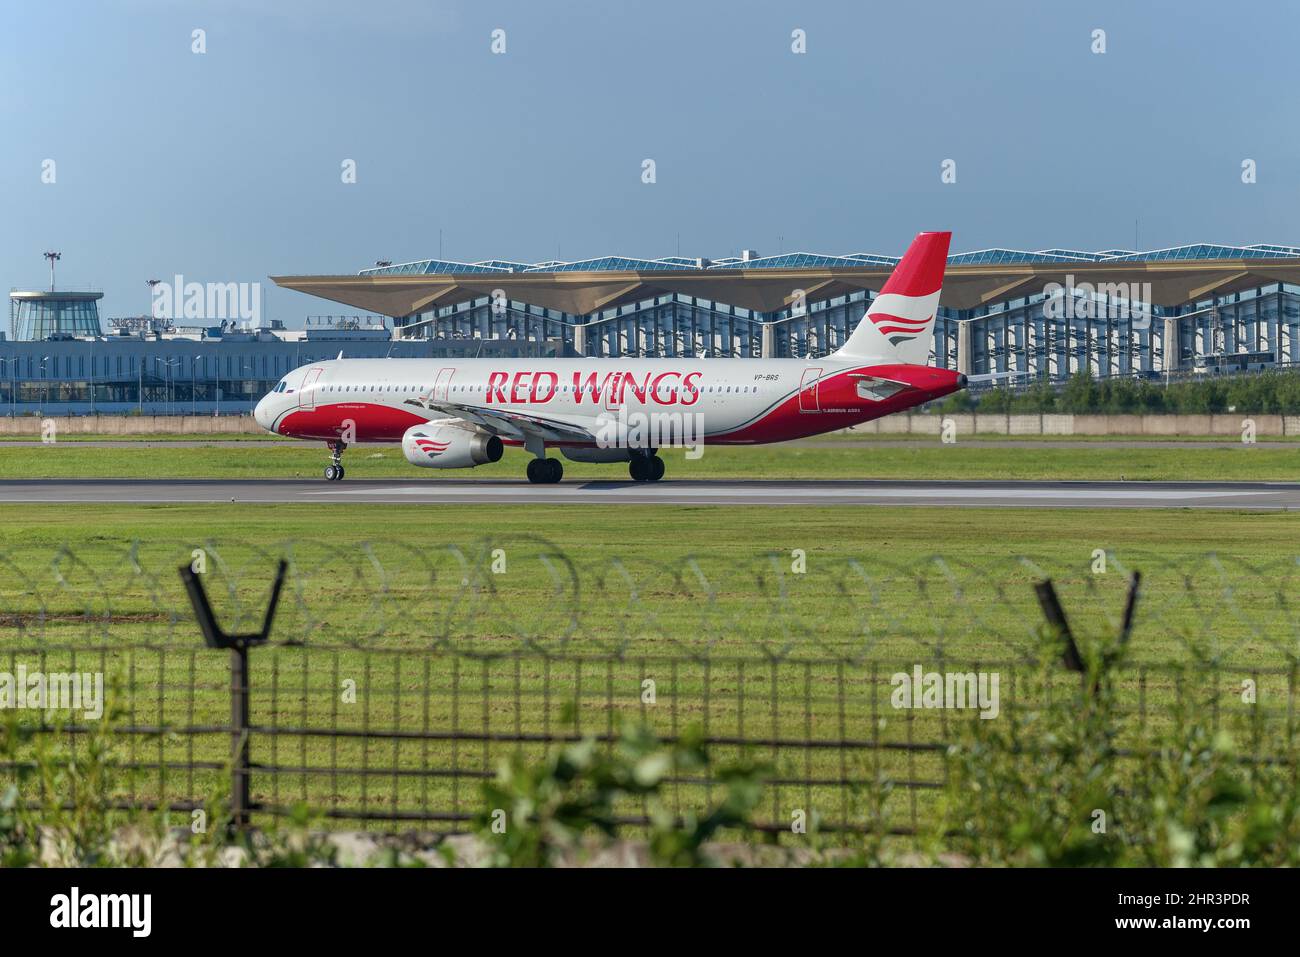 SAN PIETROBURGO, RUSSIA - 08 AGOSTO 2020: Aereo RED WINGS Airbus A321-200 (VP-BRS) sulla strada di servizio dell'aeroporto di Pulkovo Foto Stock